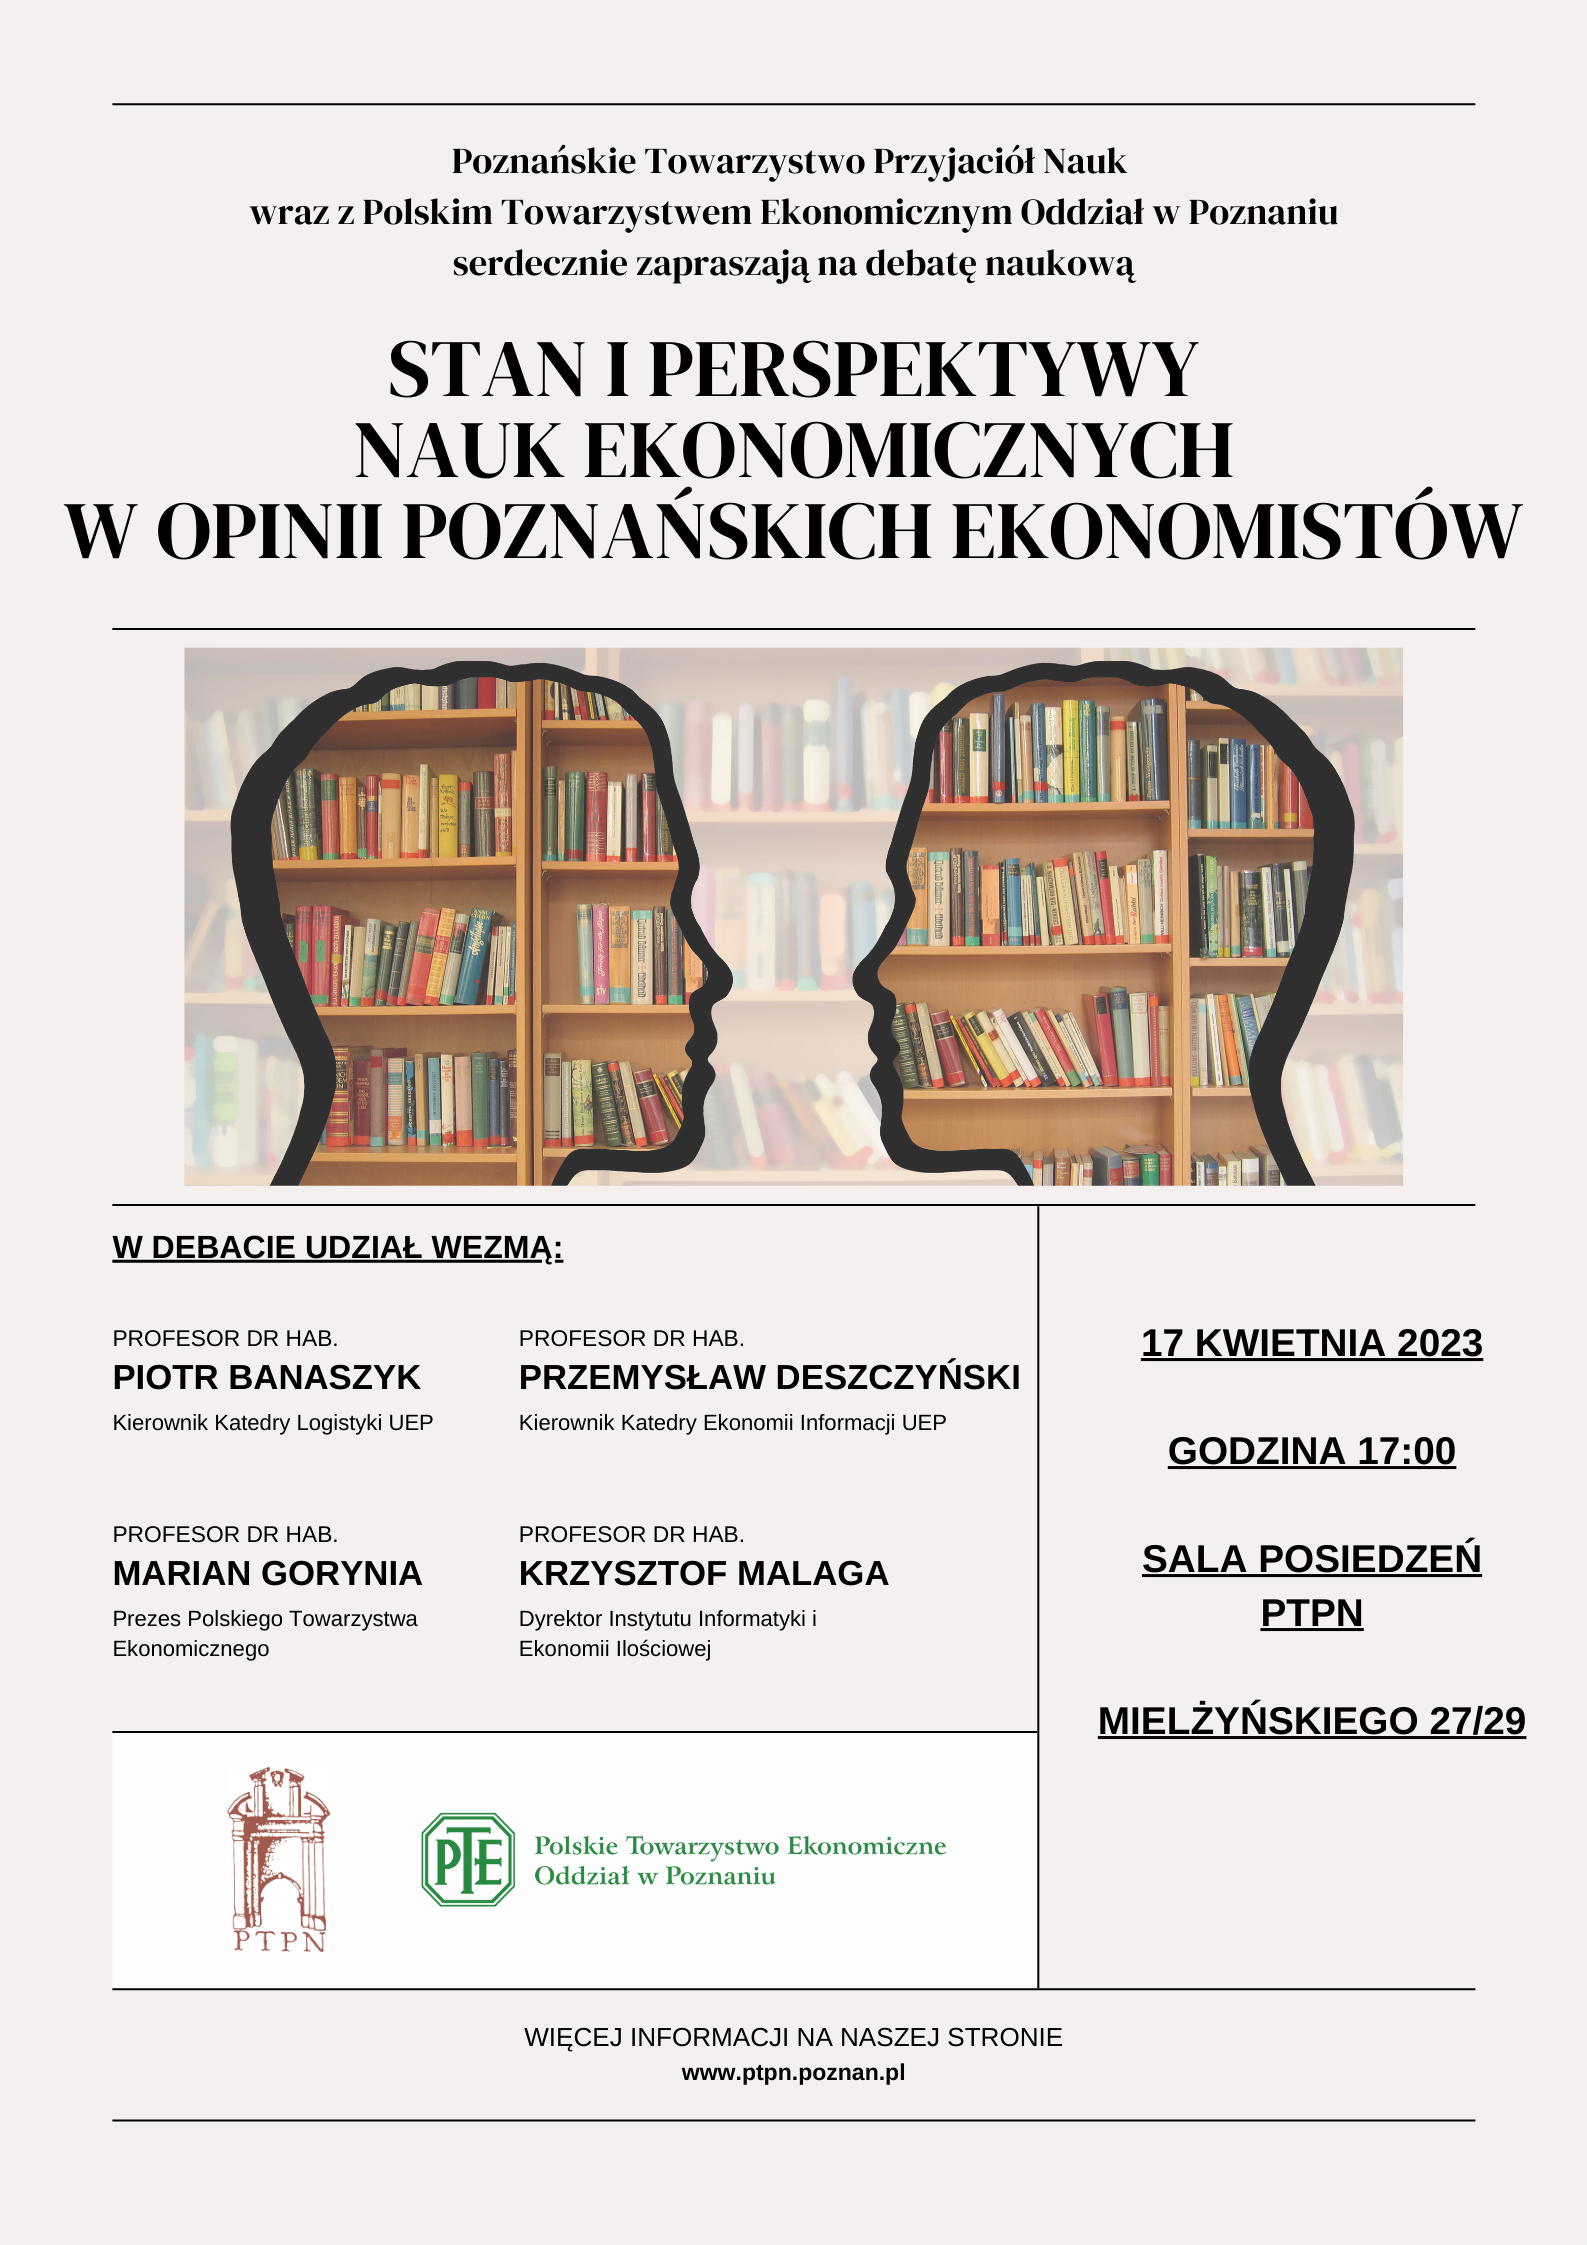 Debata: Stan i perspektywy nauk ekonomicznych w opinii poznańskich ekonomistów